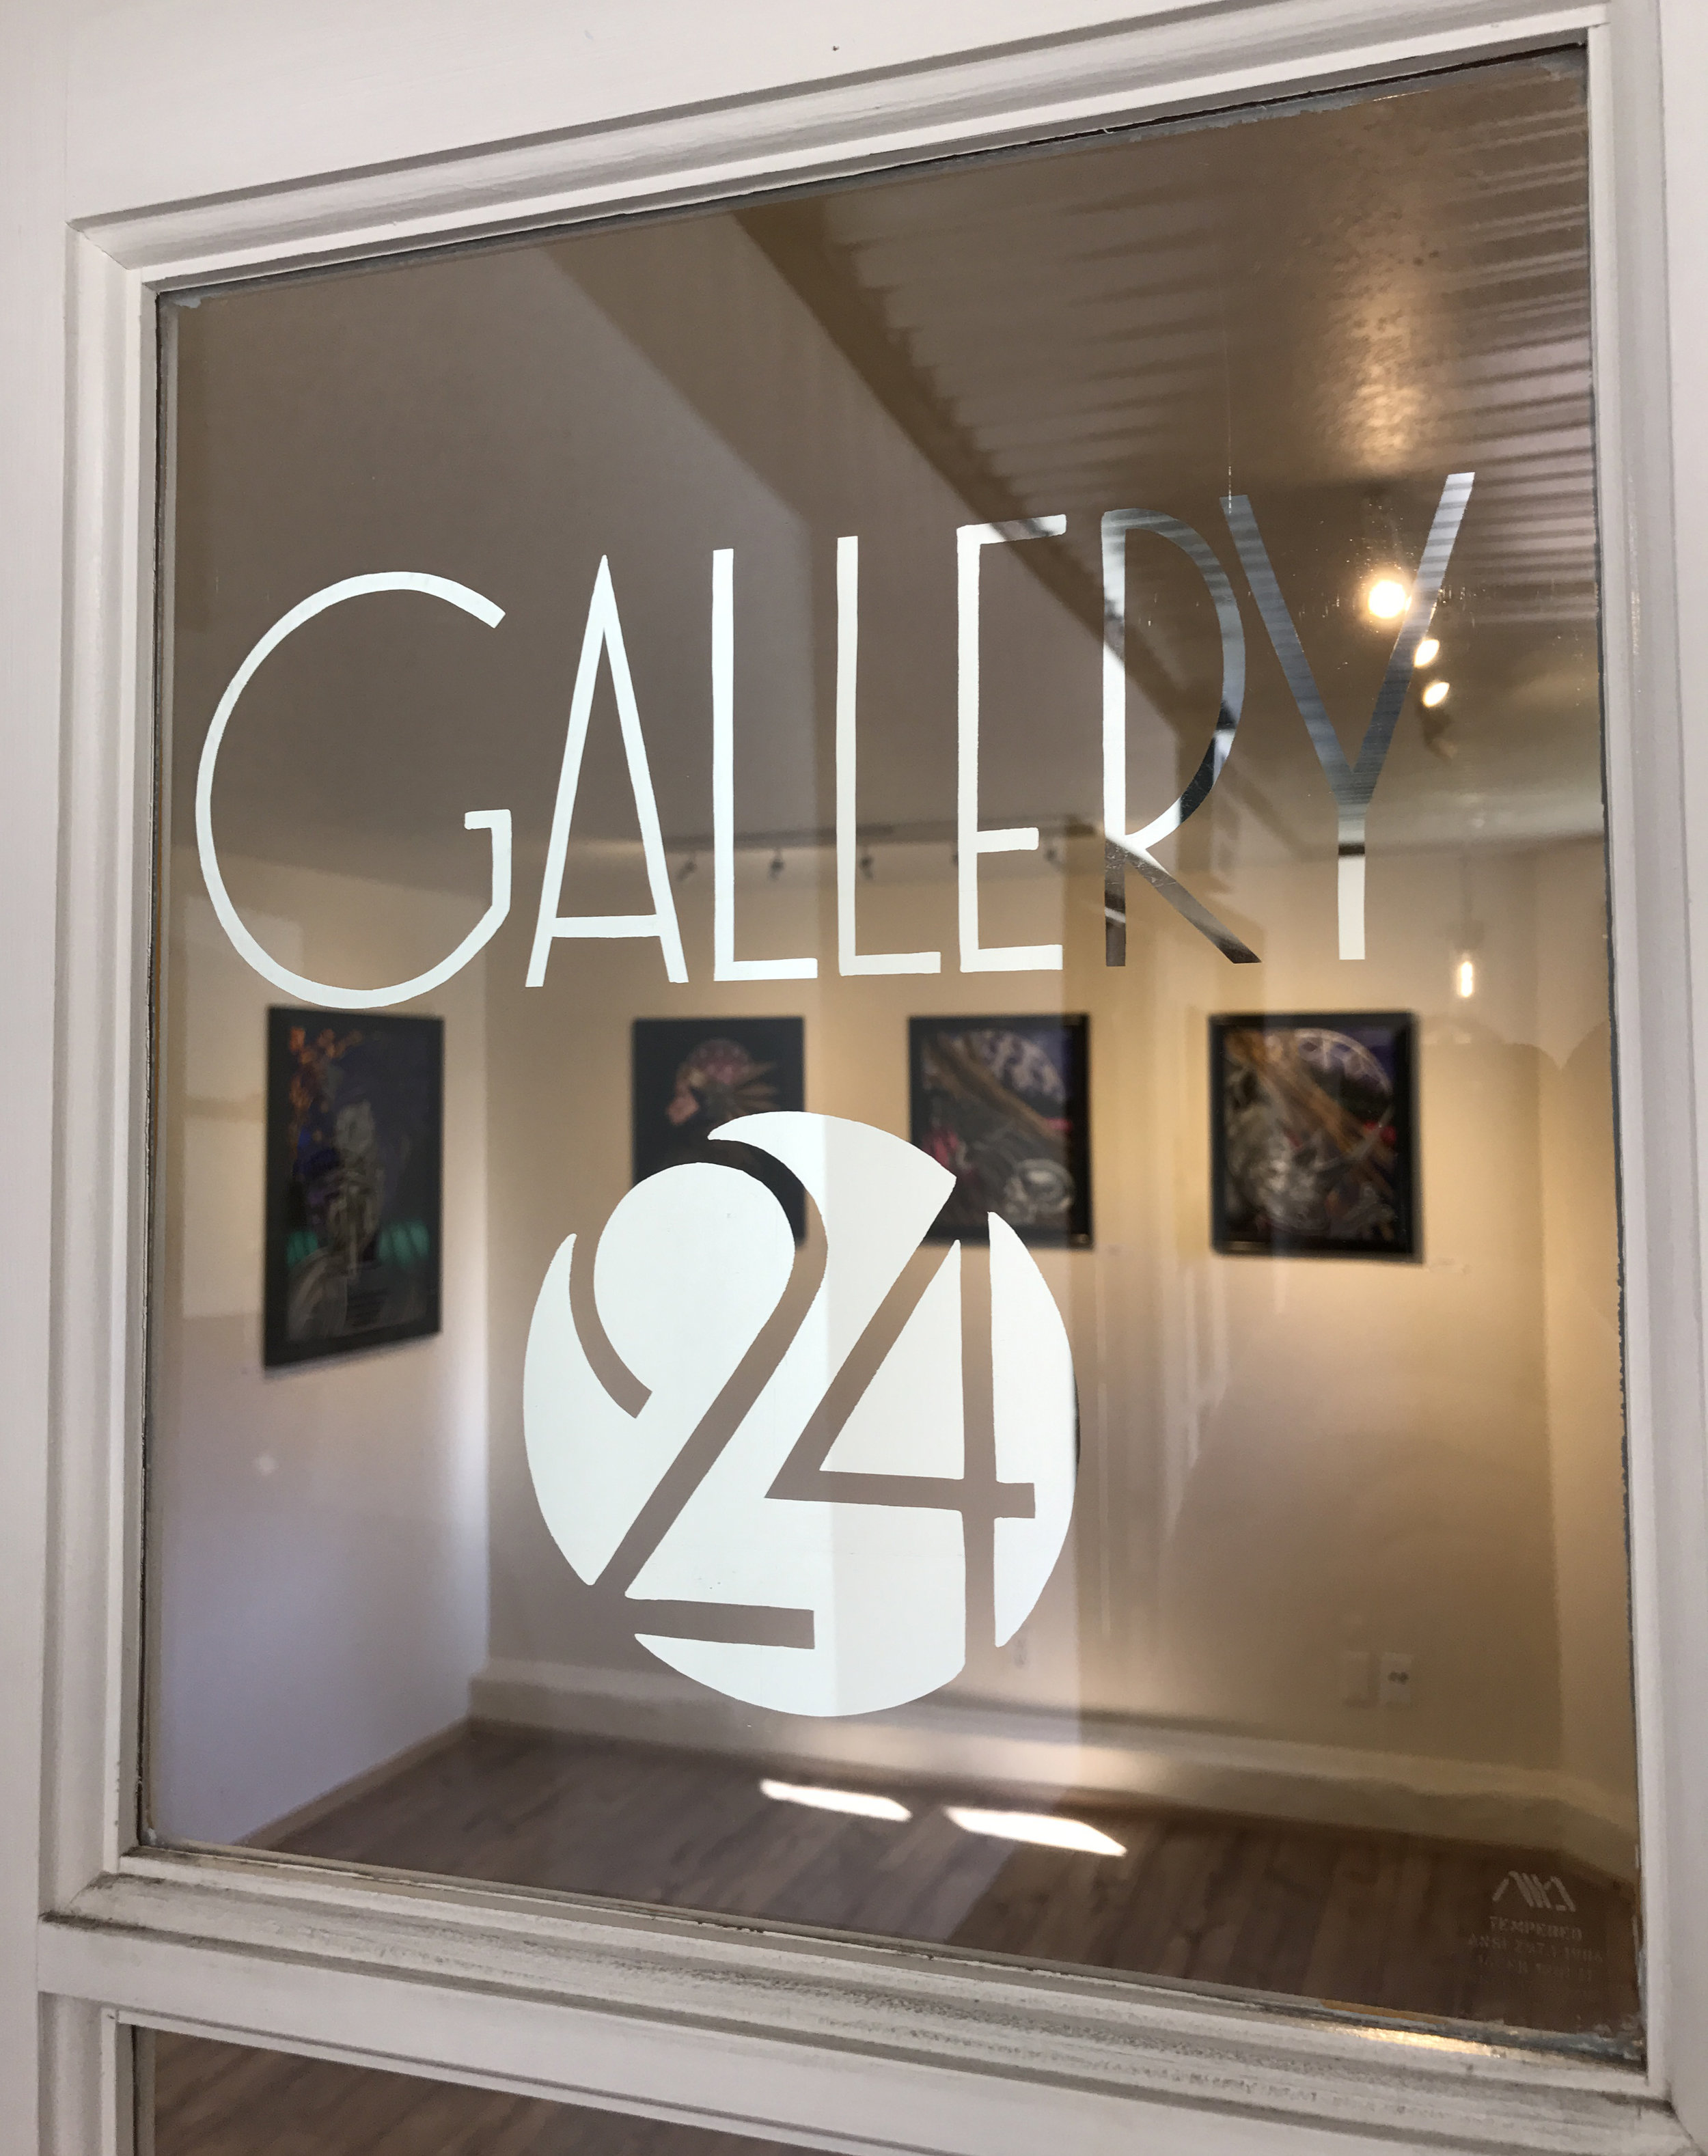 Gallery 24 Sacramento